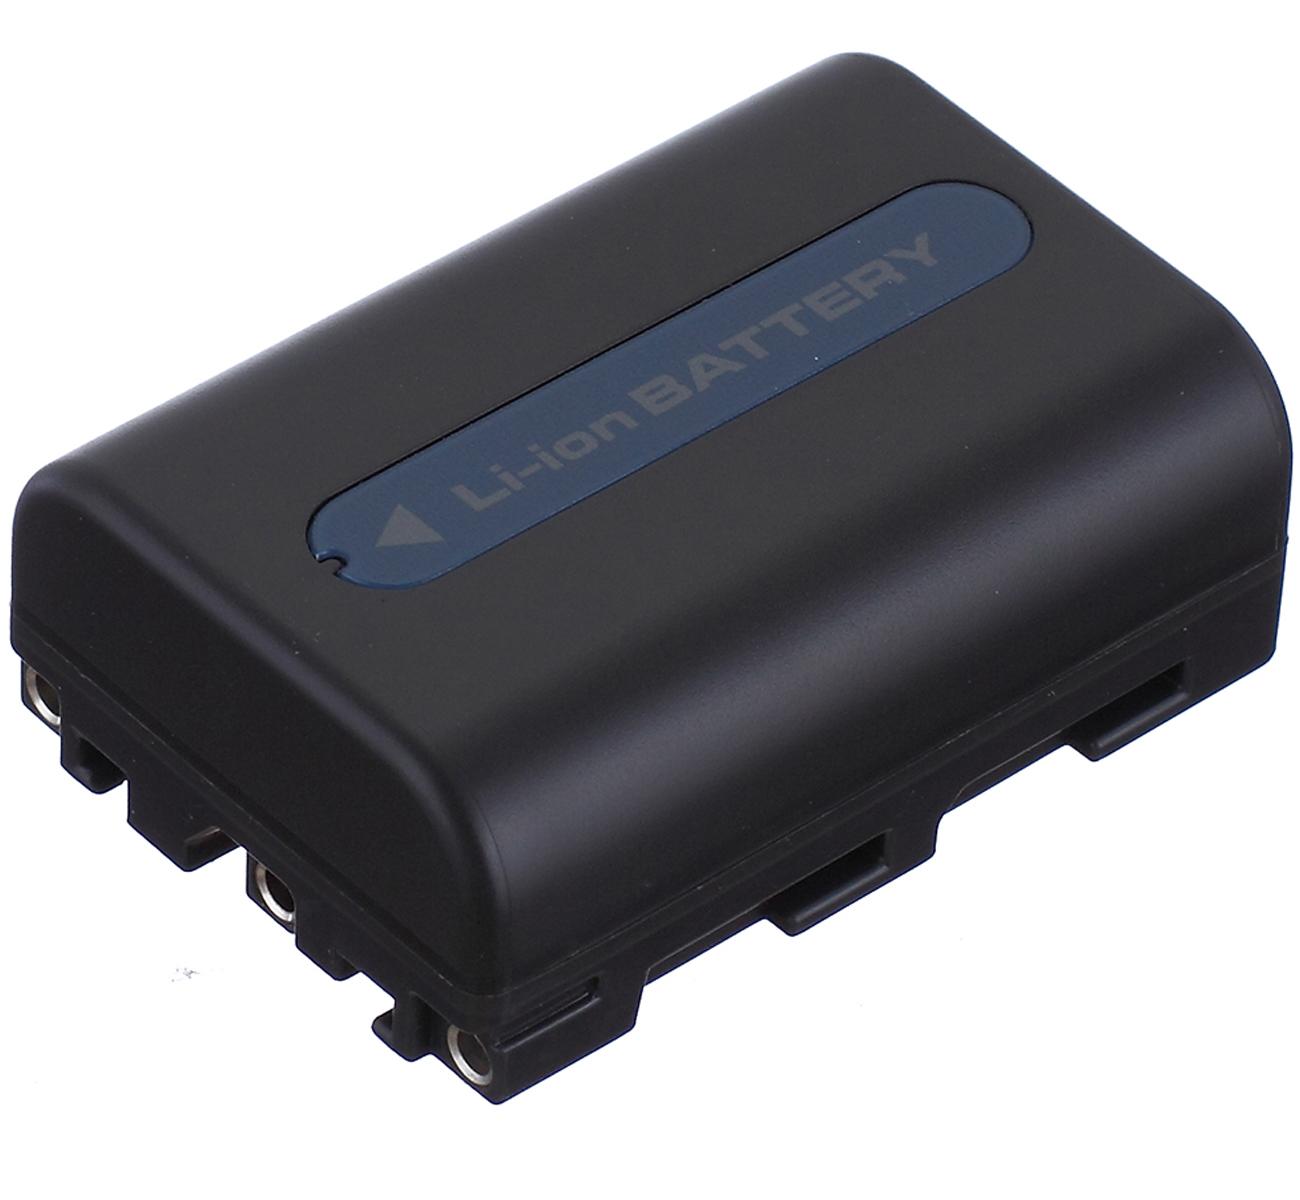 Изображение товара: Аккумуляторная батарея для sony DCR-PC6, PC8, PC9, PC100, PC101, PC103, PC104, PC105, PC110, PC115, PC120, PC330 MiniDV Handycam видеокамеры